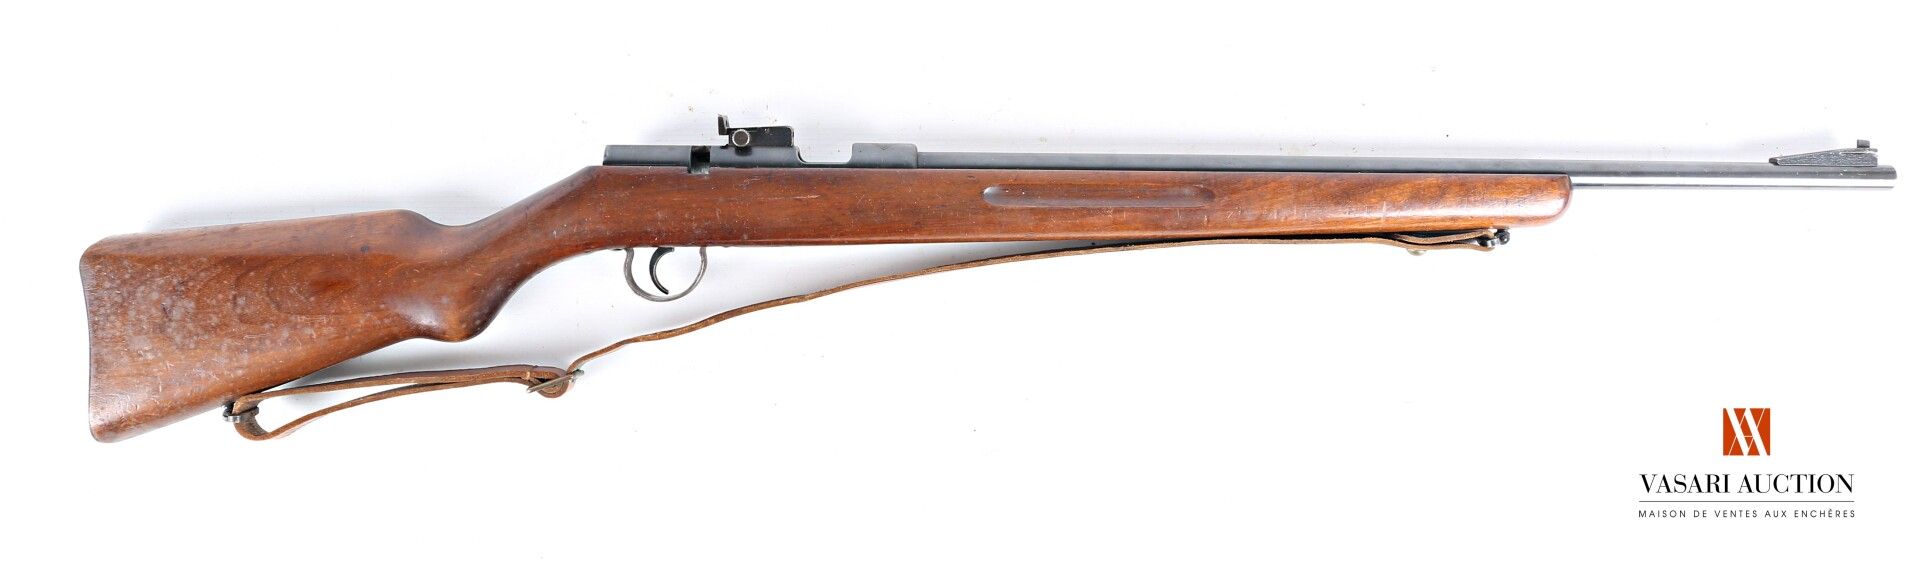 Null ERMA Trainingskarabiner Modell 1957 Kaliber 22 long rifle, 60 cm langer gez&hellip;